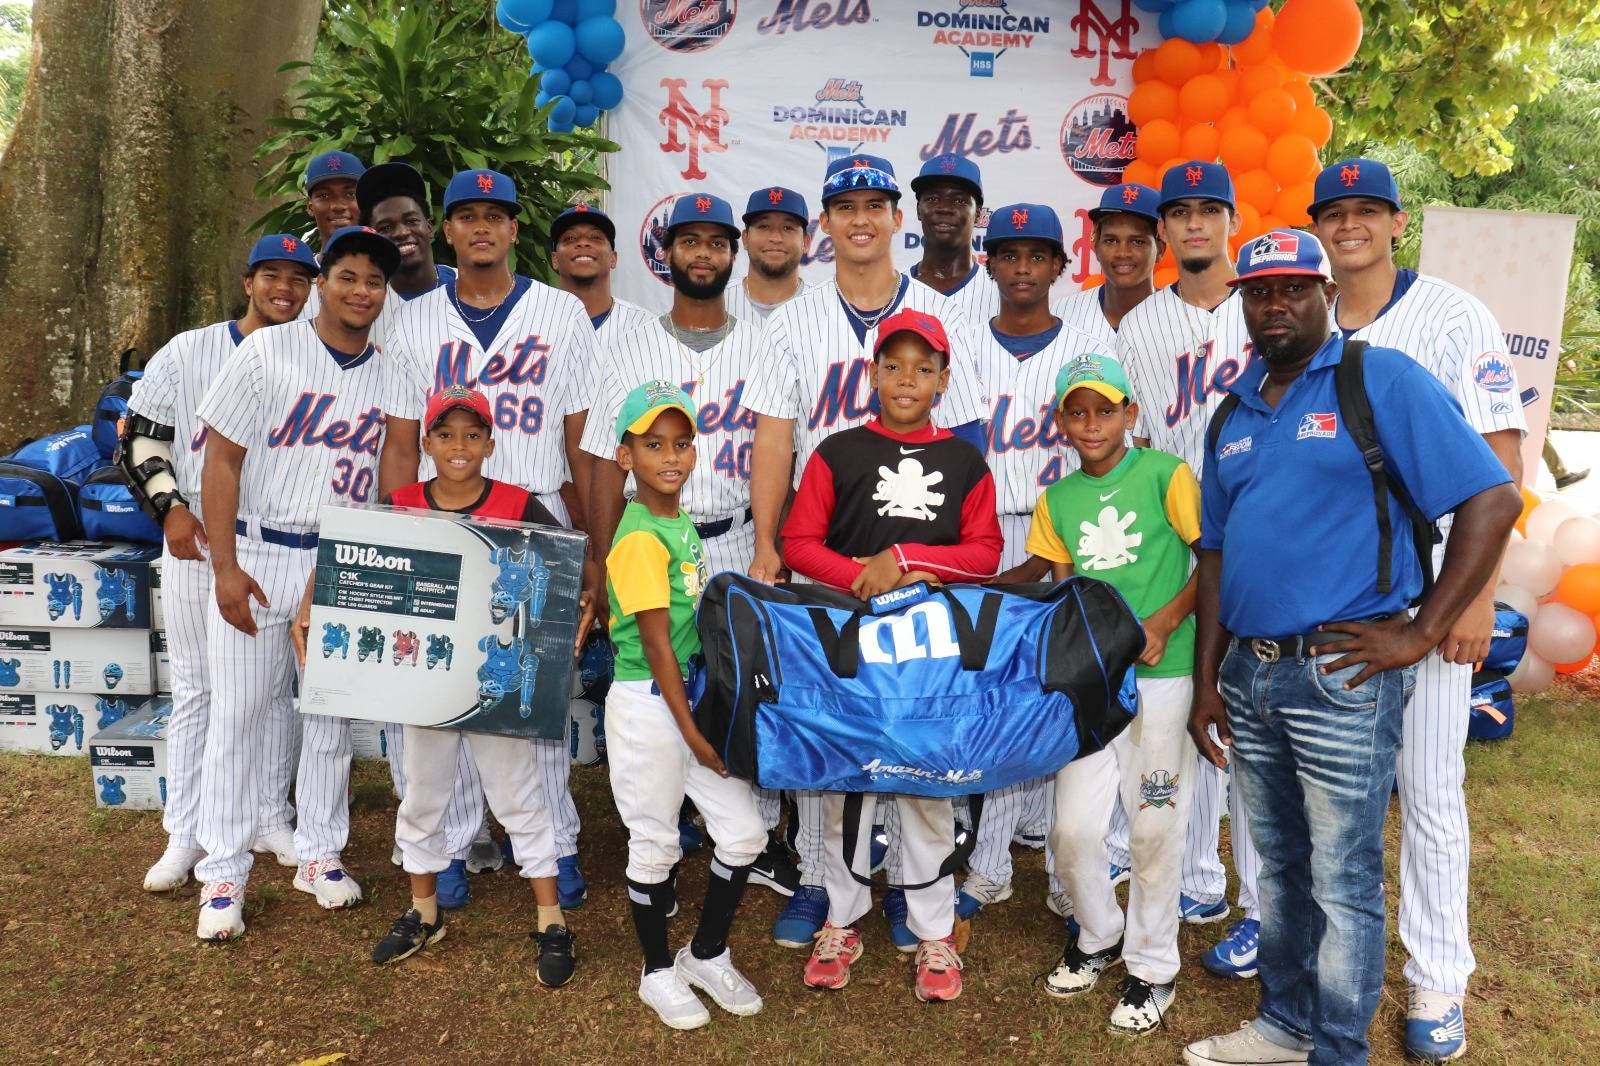 Fundación NY Mets respalda a jóvenes; entrega utensilios deportivos a academias